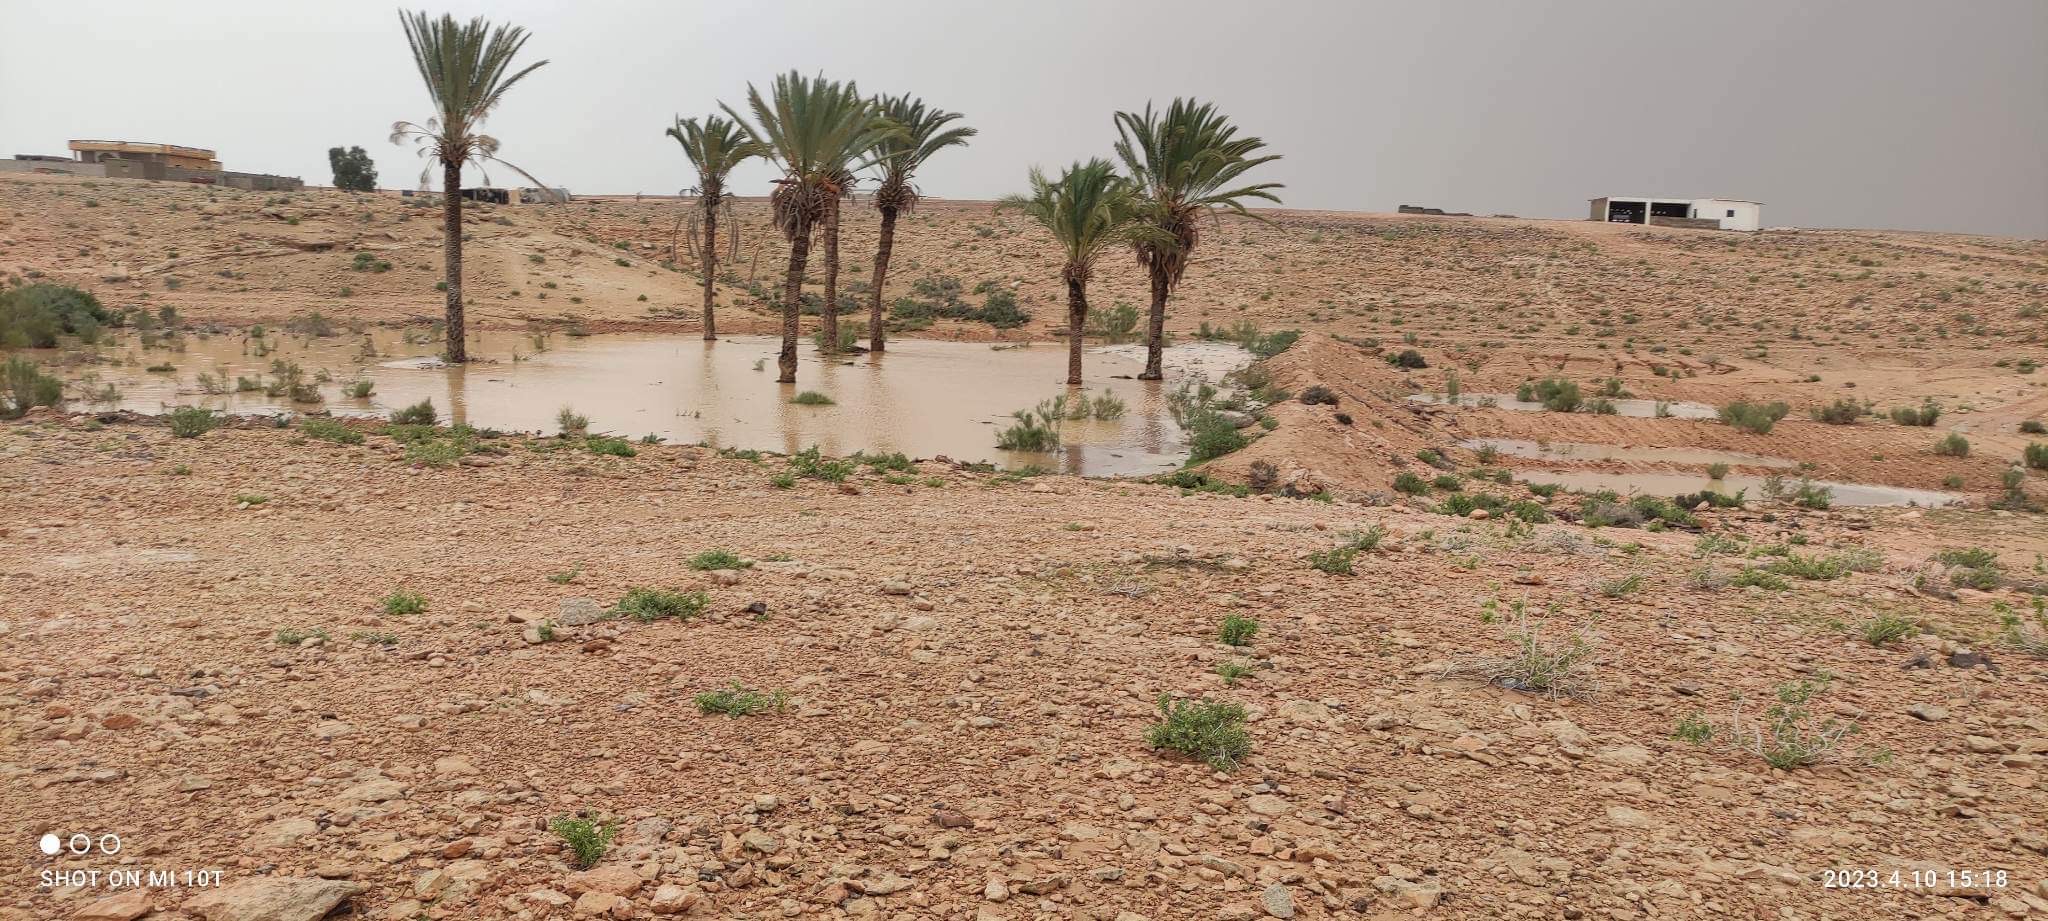 سيول محدودة وثلوج متساقطة تفاجئ مناطق شمال سيناء